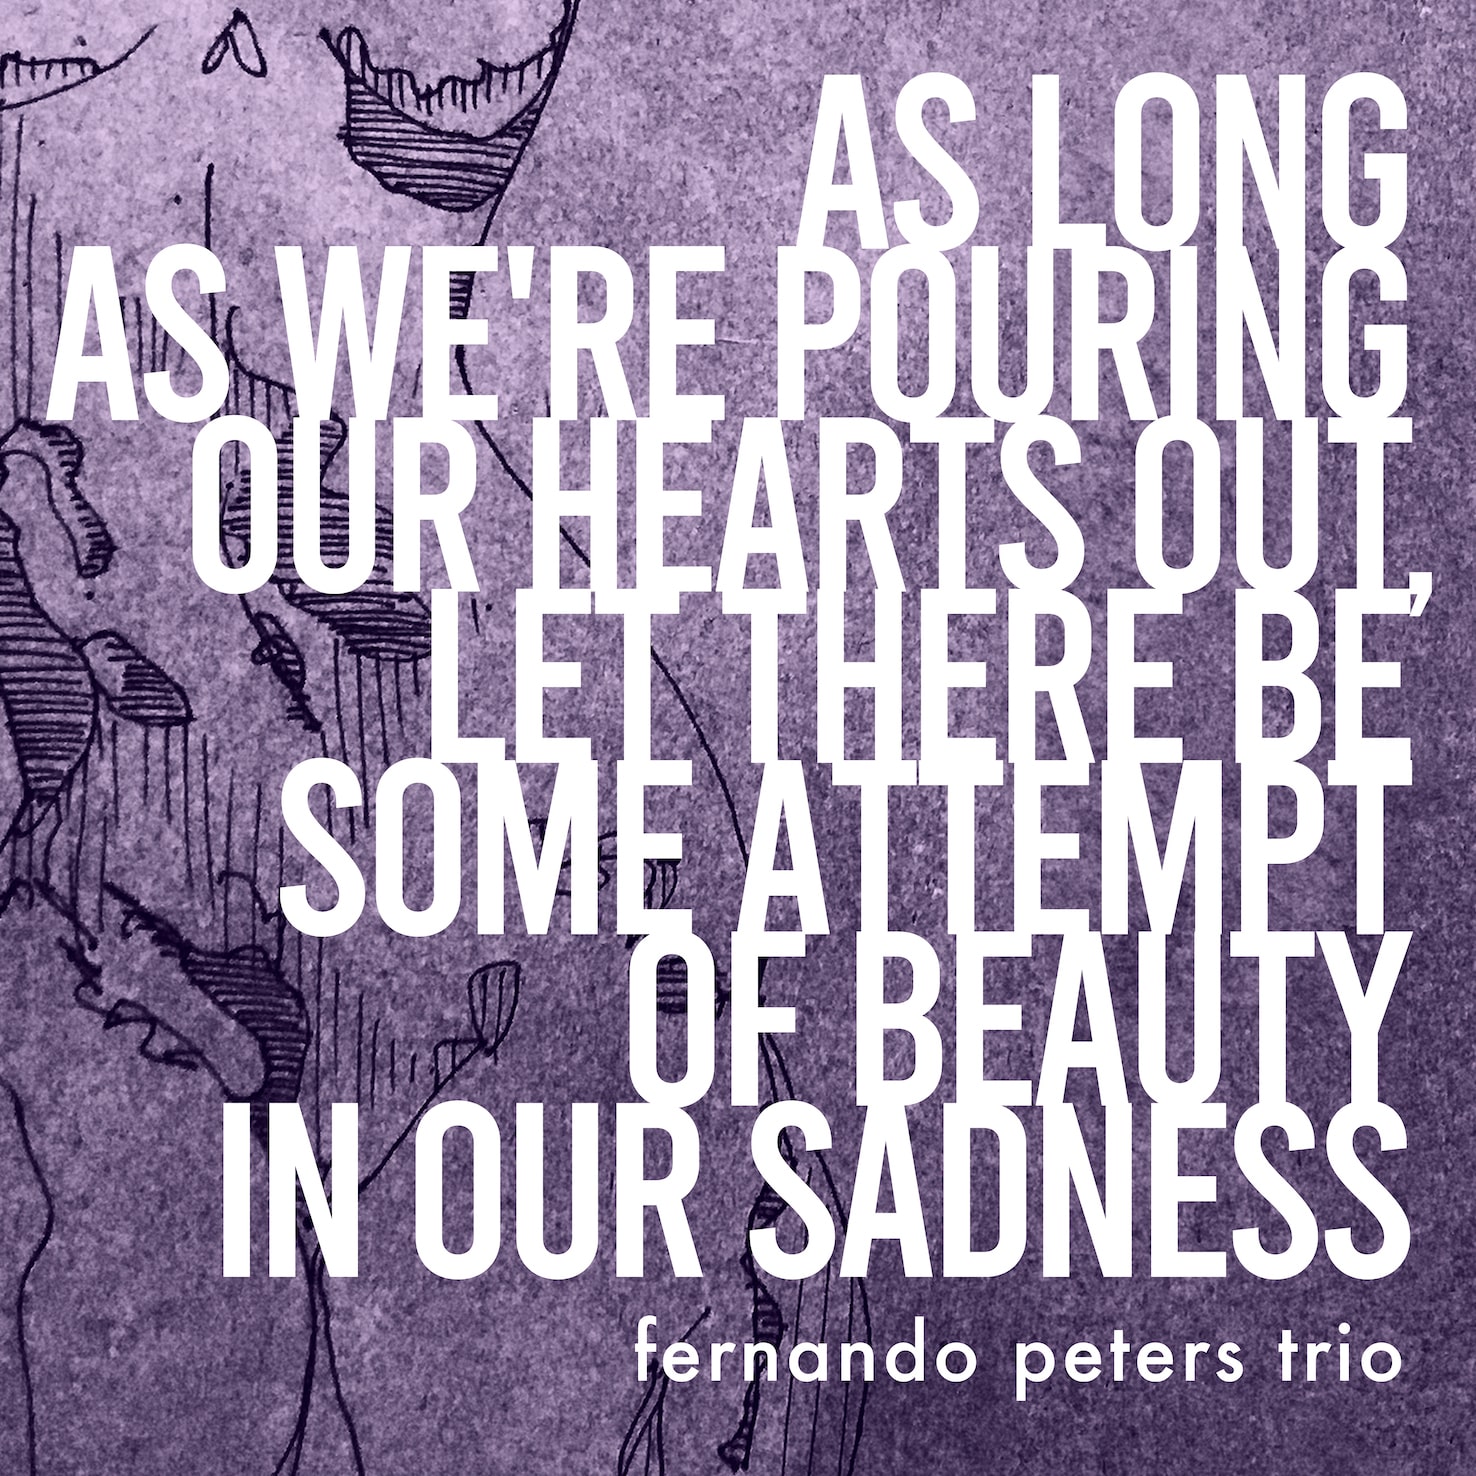 revistaprosaversoearte.com - Fernando Peters Trio lança 3 musicas de álbum inédito